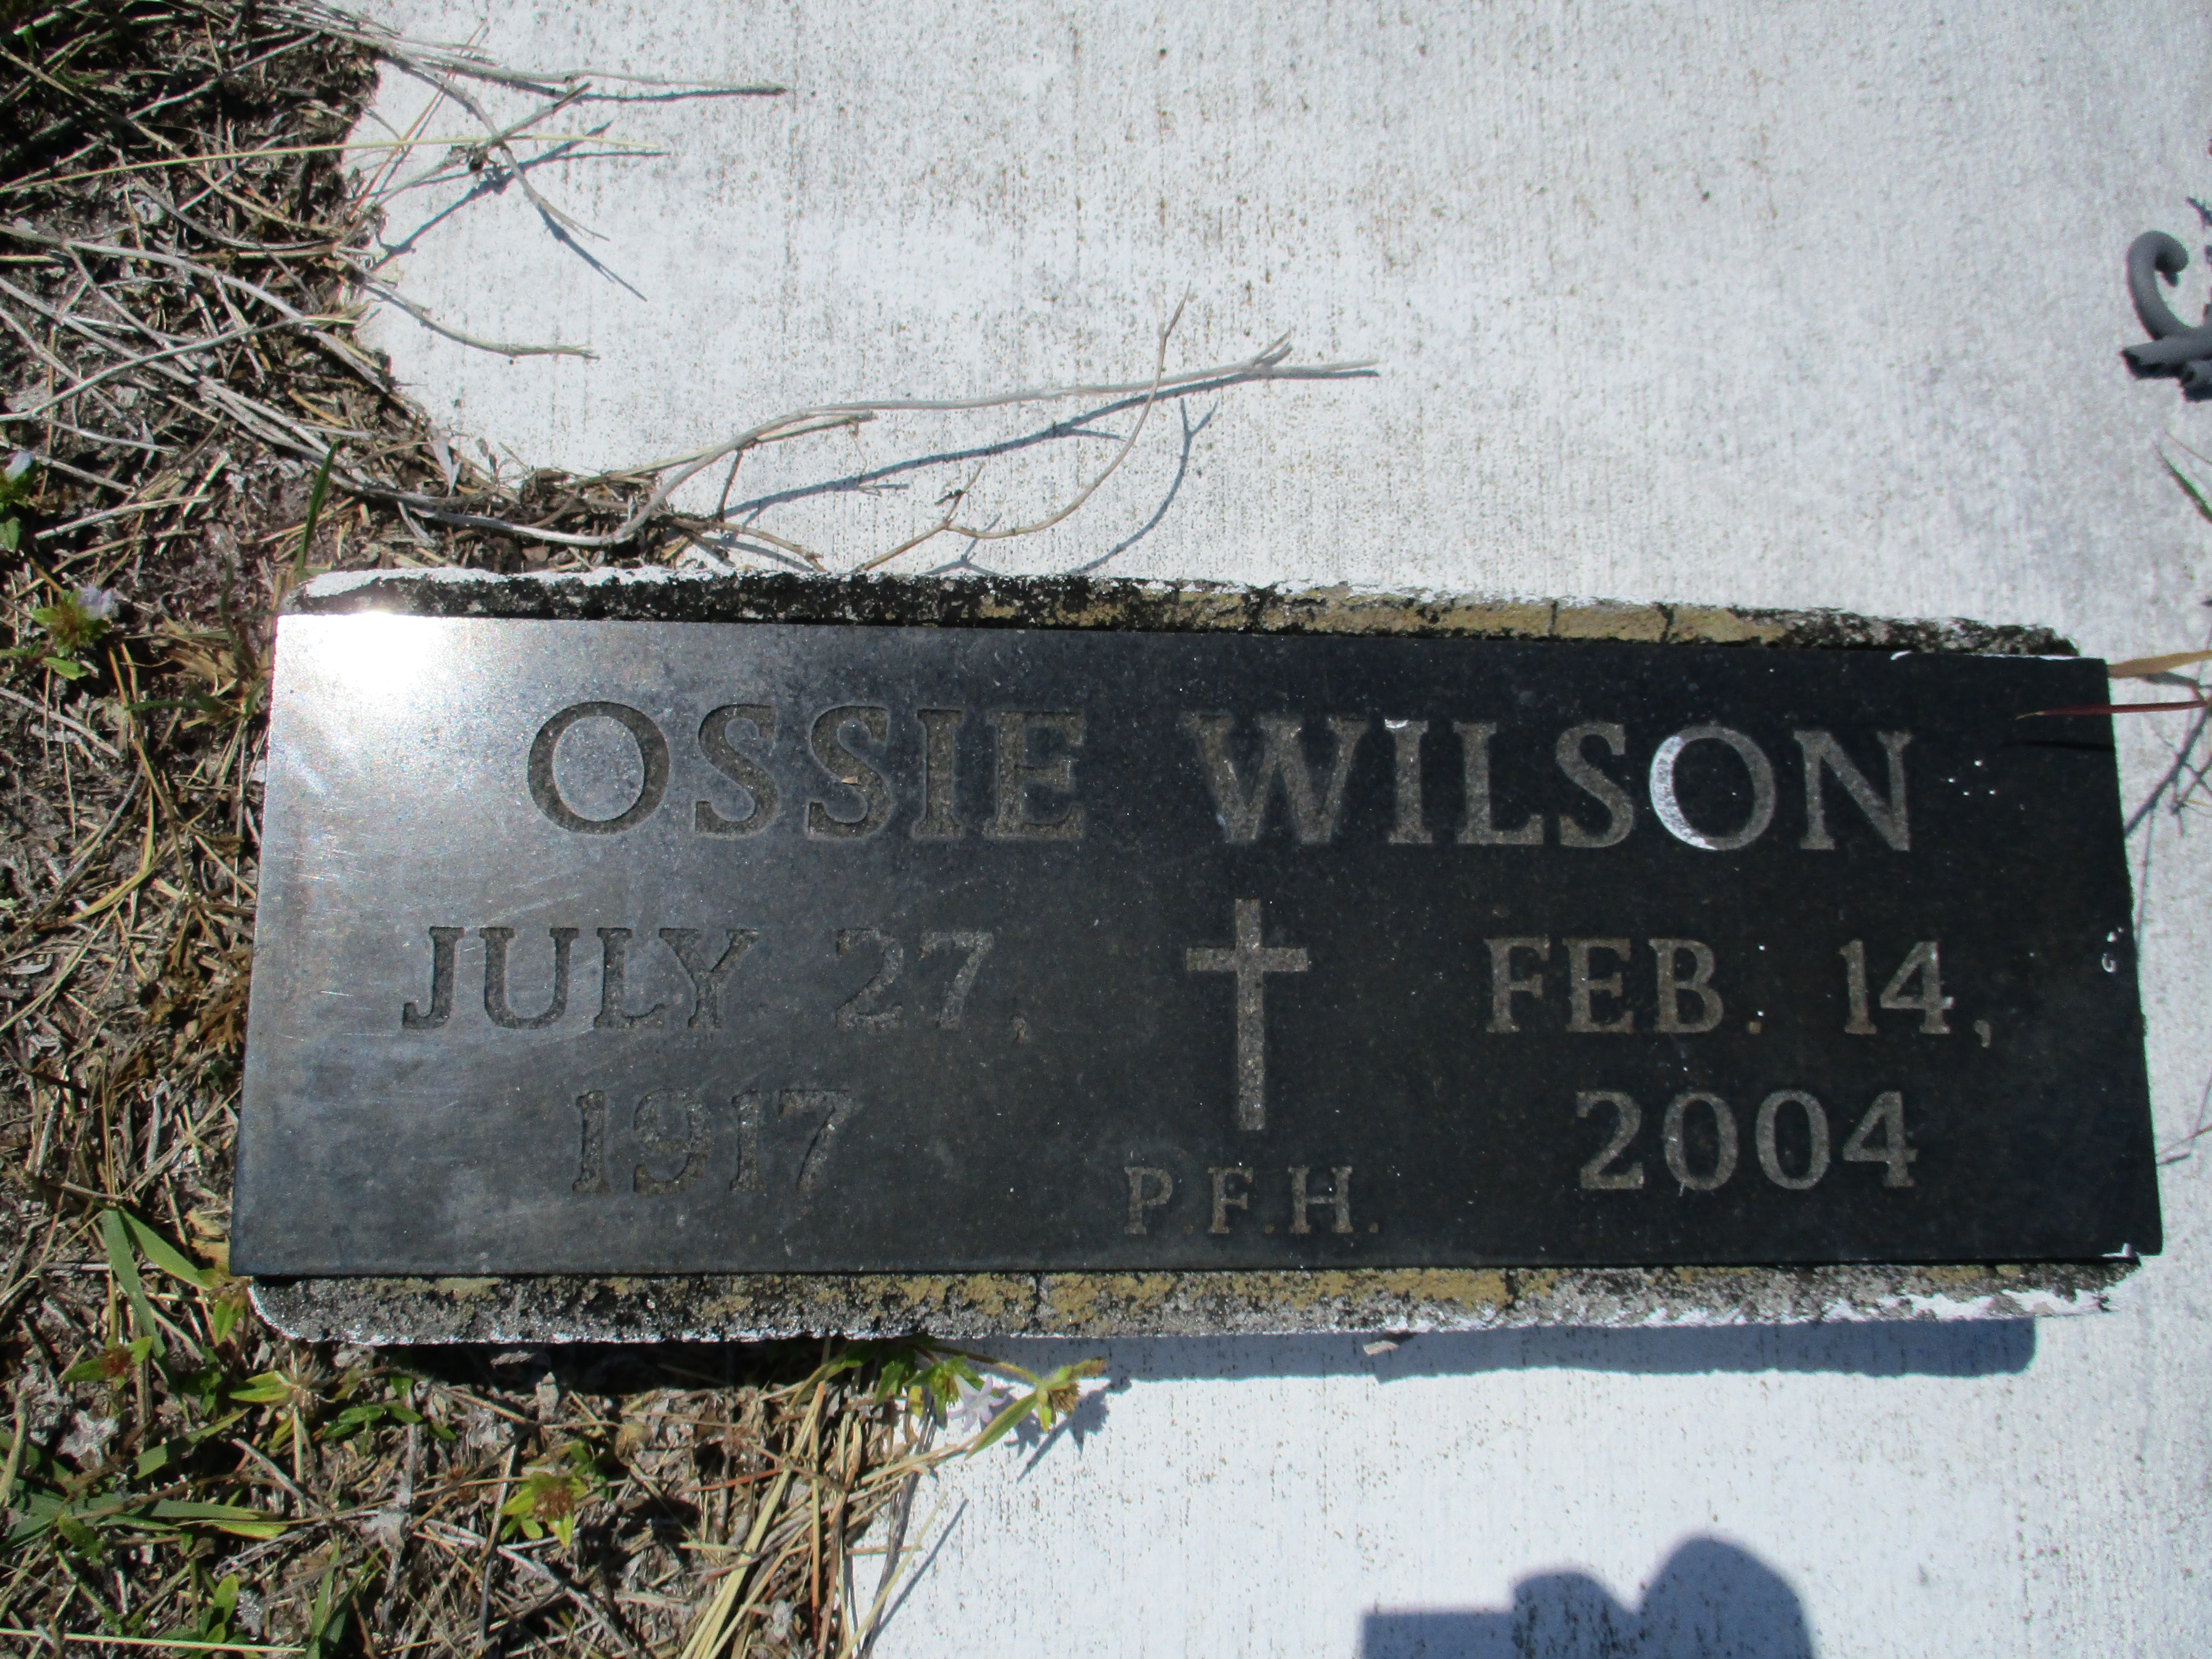 Ossie Wilson